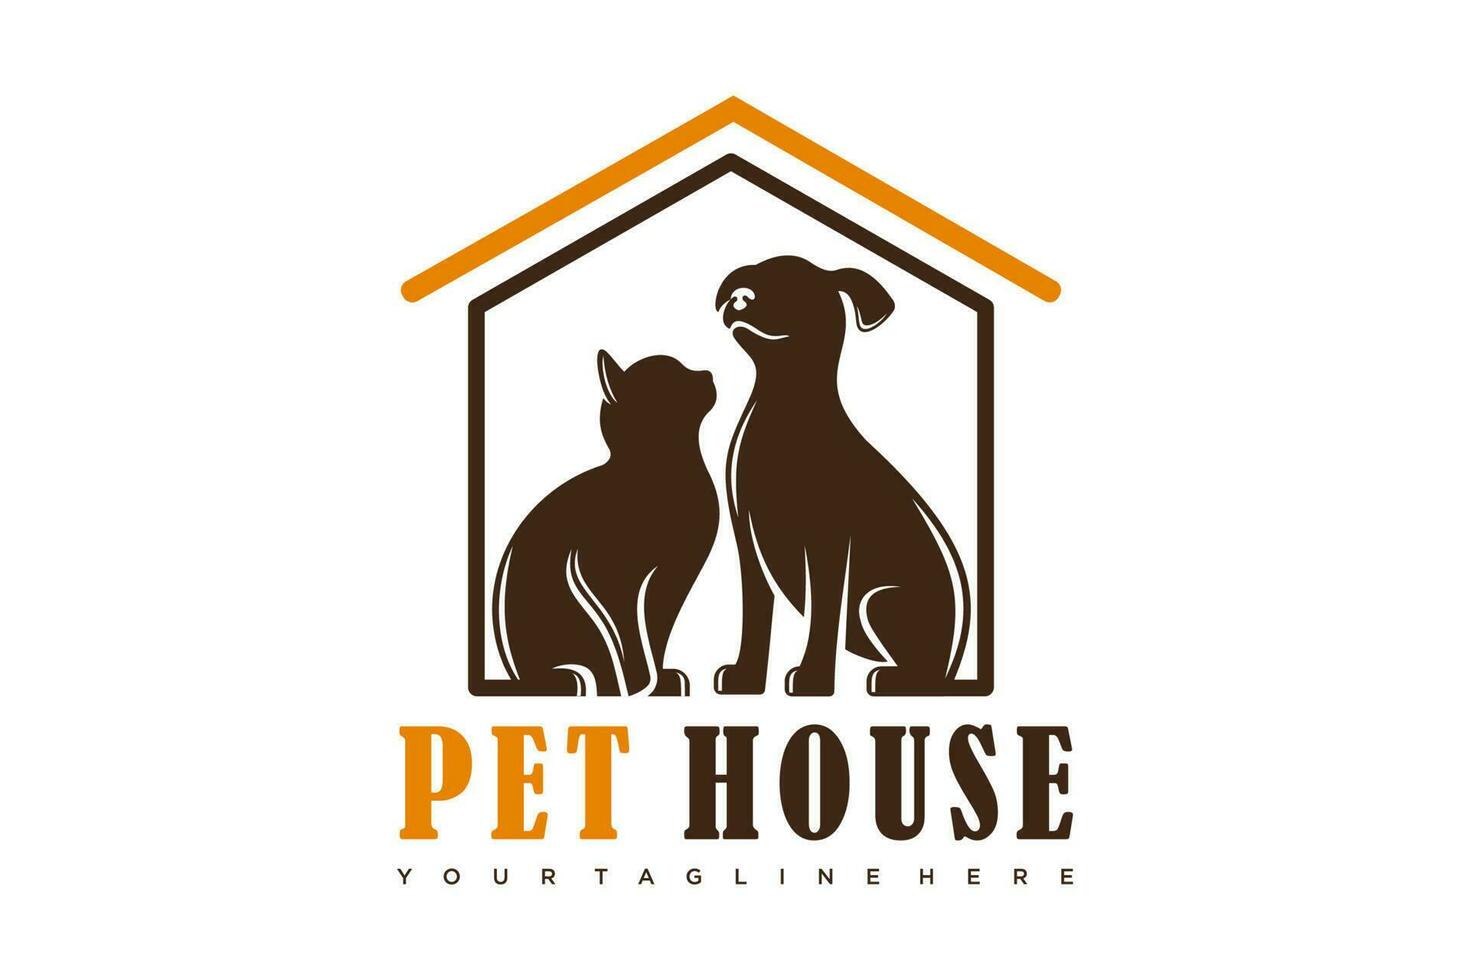 cane gatto animale domestico Casa casa logo vettore icona illustrazione